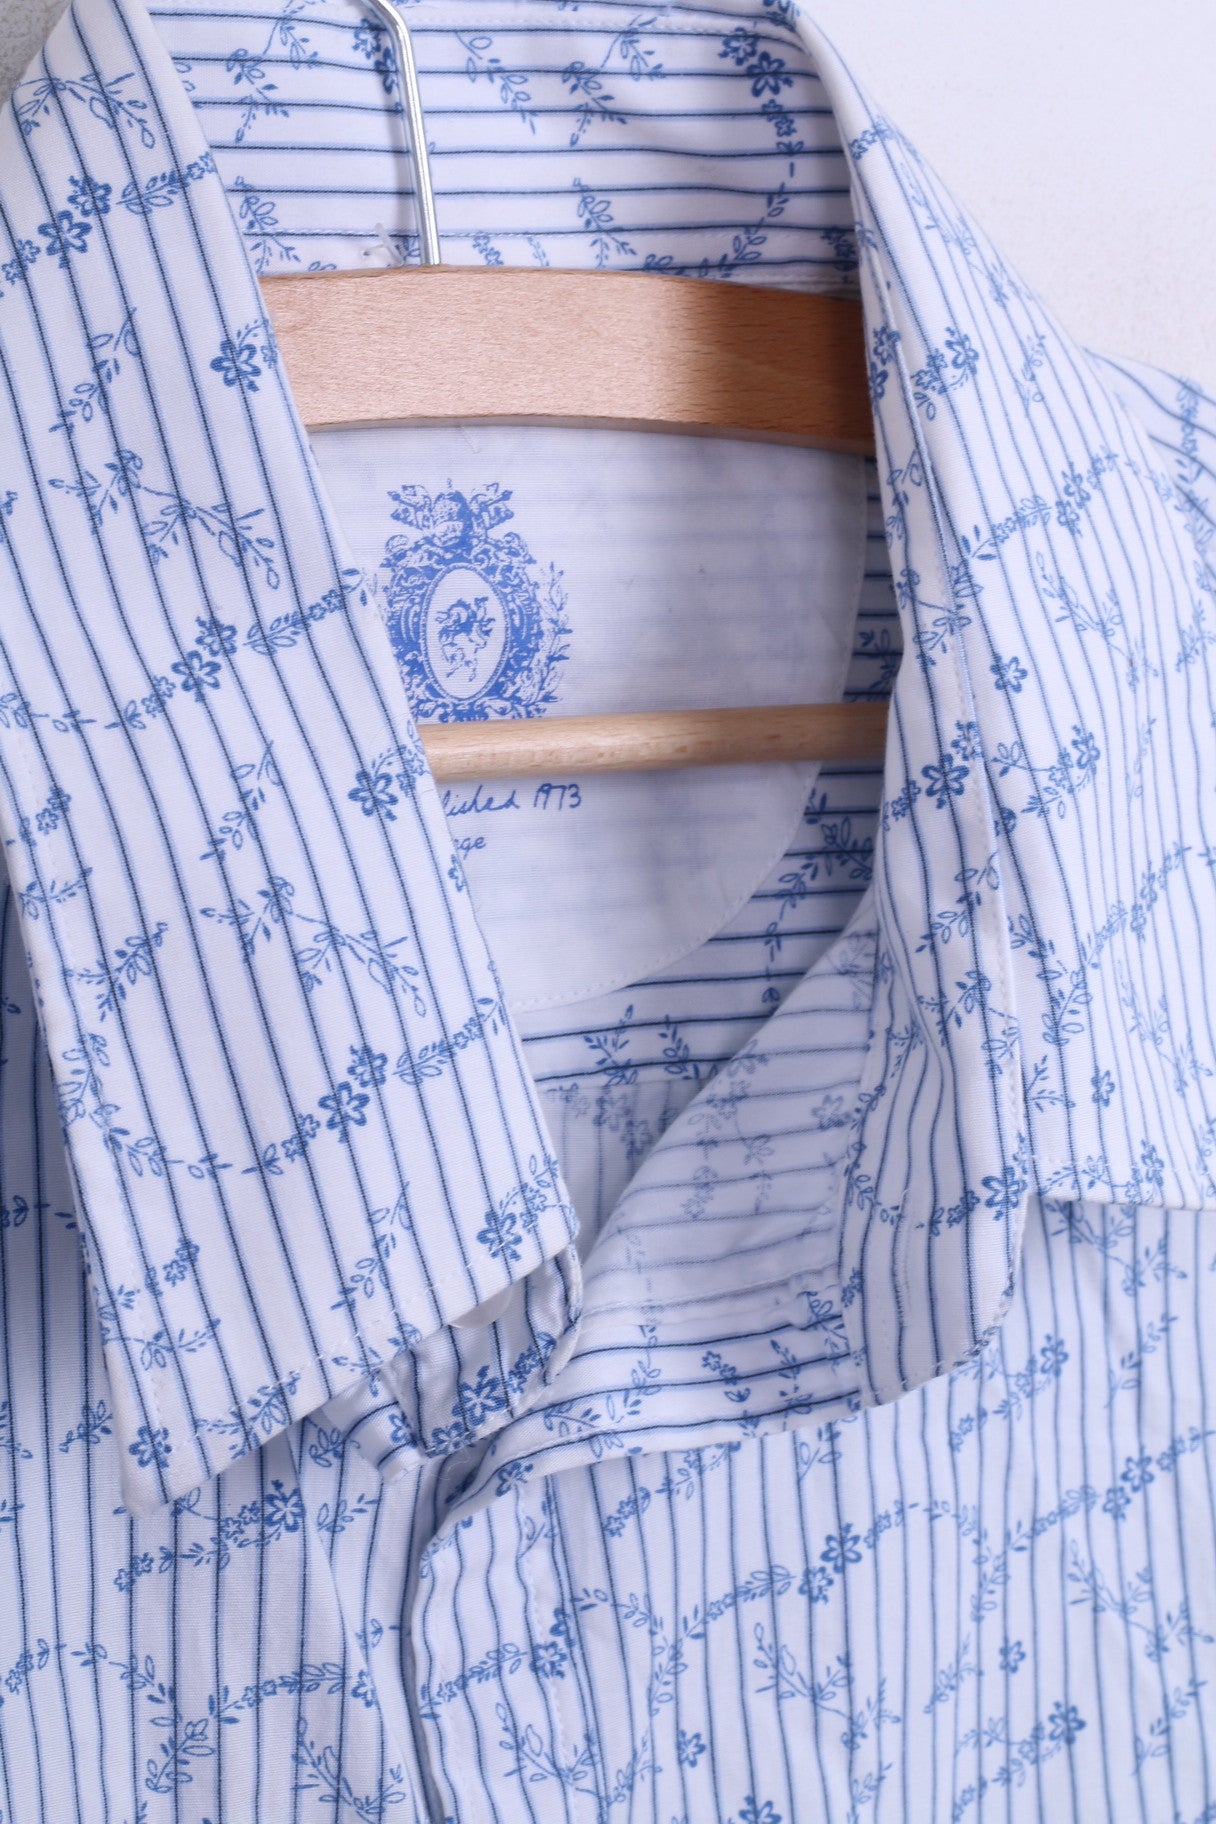 DENIM 73 Camicia casual da uomo L a maniche lunghe in cotone a righe bianche, colletto standard